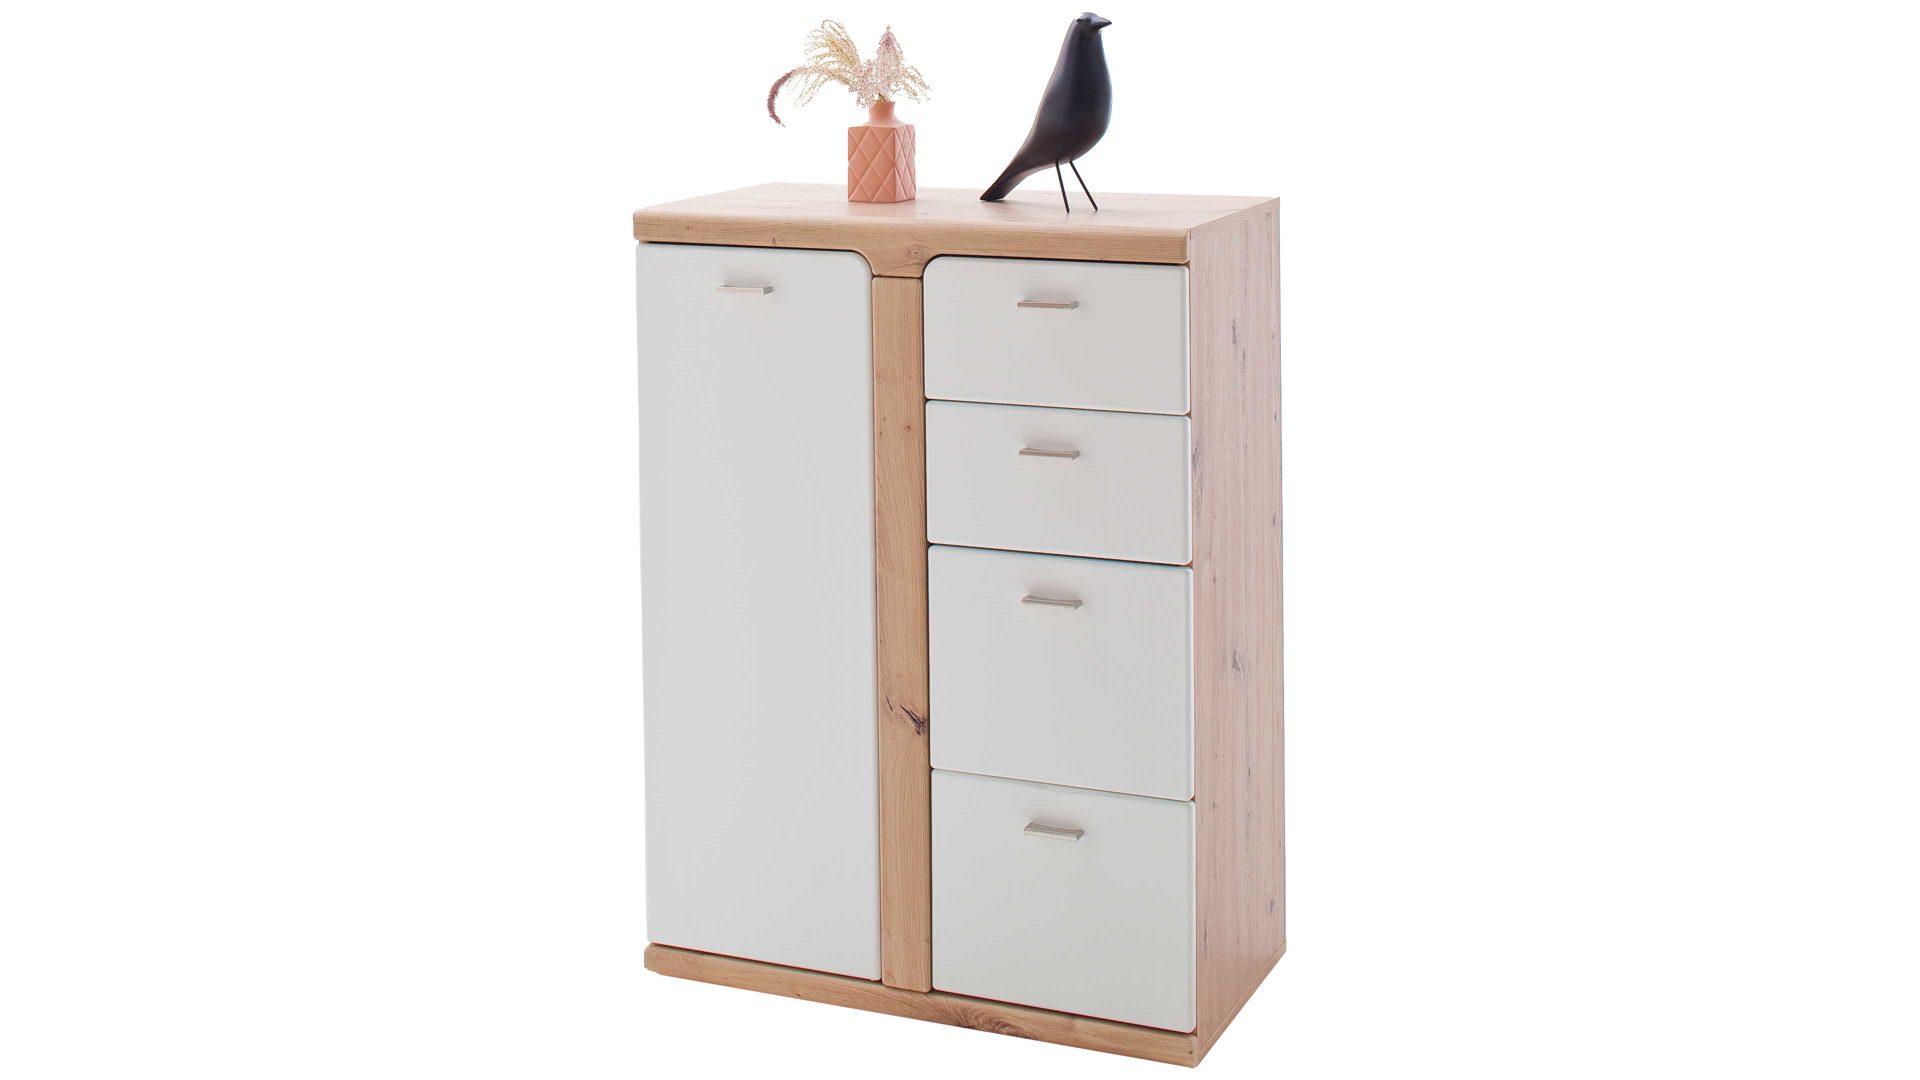 Kombikommode Mca furniture aus Holz in Weiß Garderoben-Kombikommode Torino Weiß & Balkeneiche – eine Tür, vier Schubladen